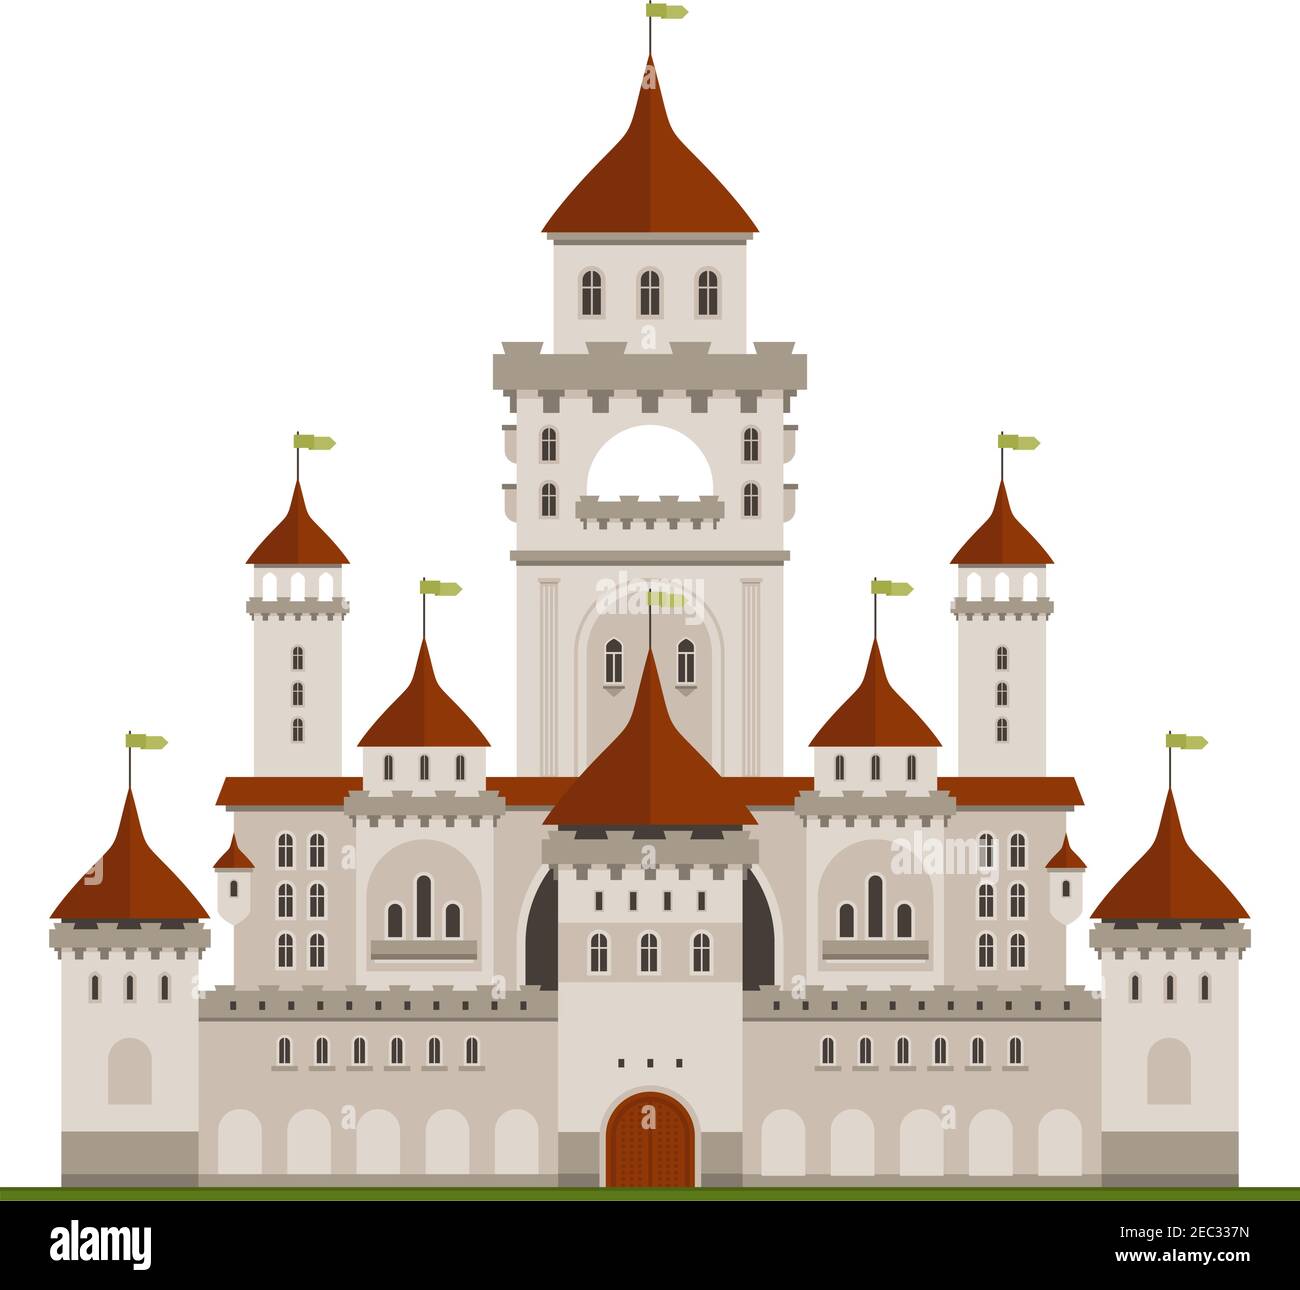 Résidence royale de la famille symbole du château en pierre grise avec murs de garde et palais principal avec tours, terrasses voûtées et tourelles coniques avec drapeaux verts. Illustration de Vecteur